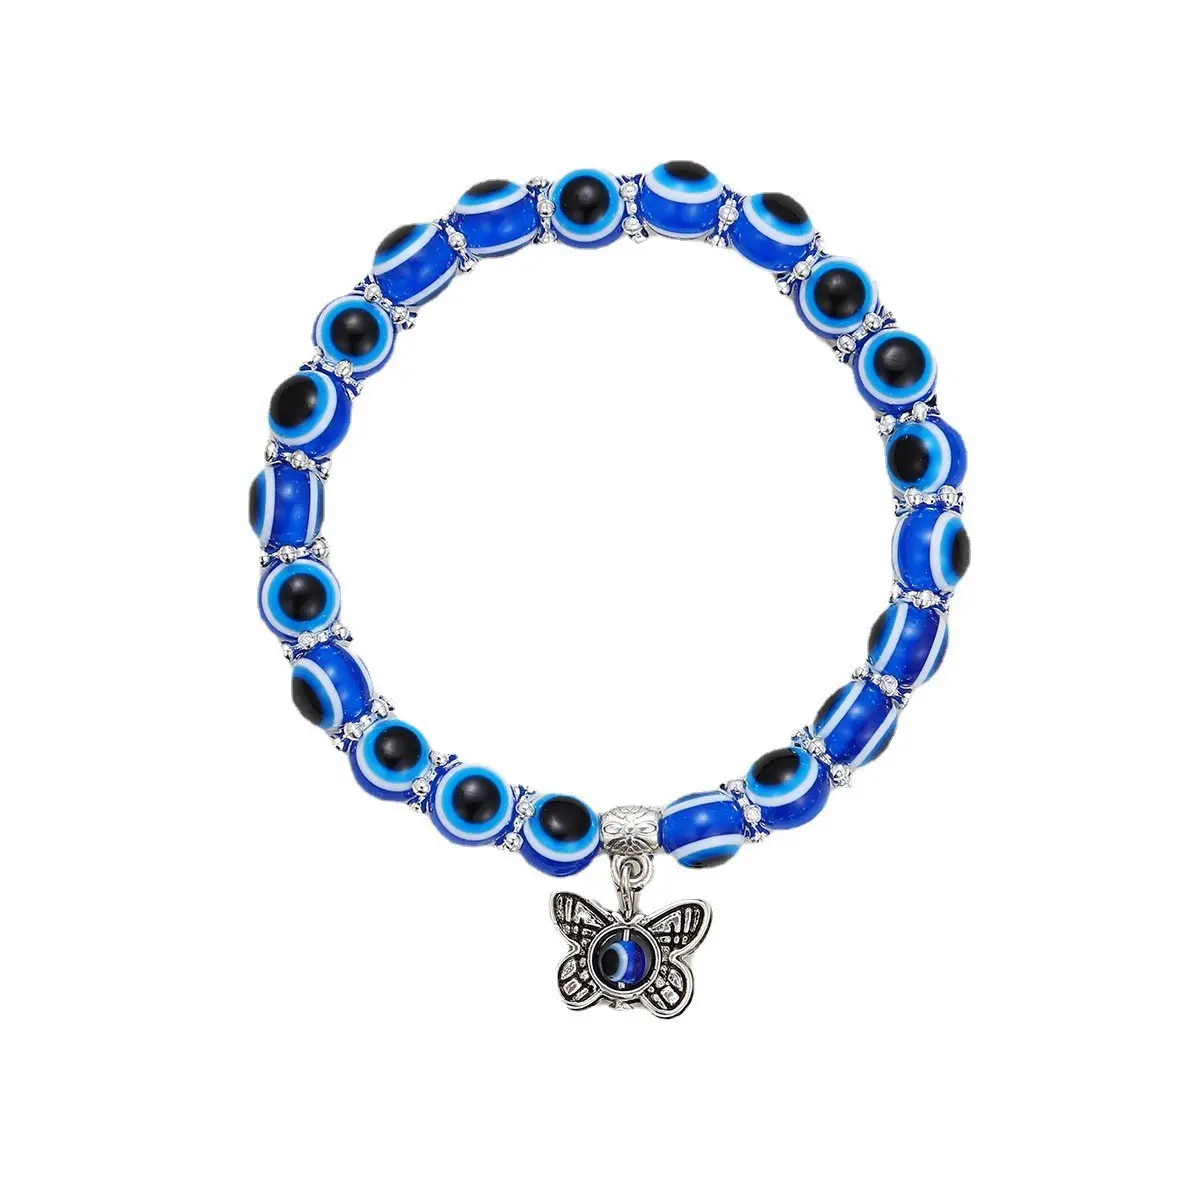 Groothandel Nieuwe Mode Retro Blauwe Ogen Kralen Geluksarmband Handvorm Siliconen Armband Sieraden Mannen En Vrouwen Paar Custom